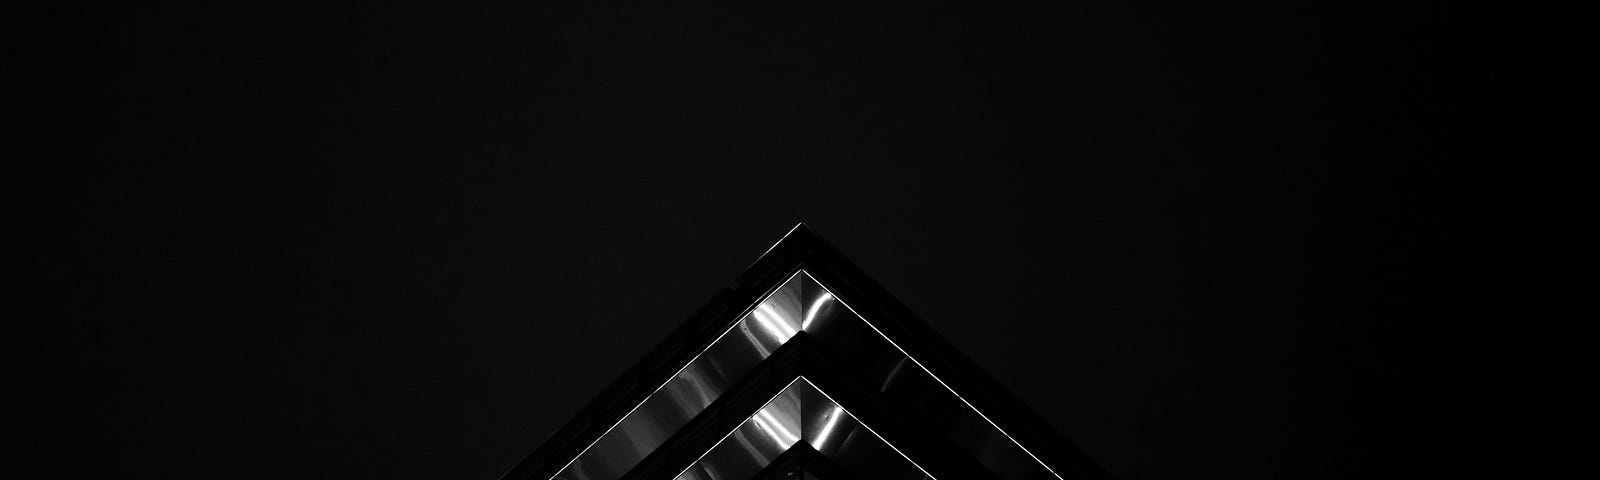 Representa uma arquitetura cívil moderna na cor prata em um fundo preto